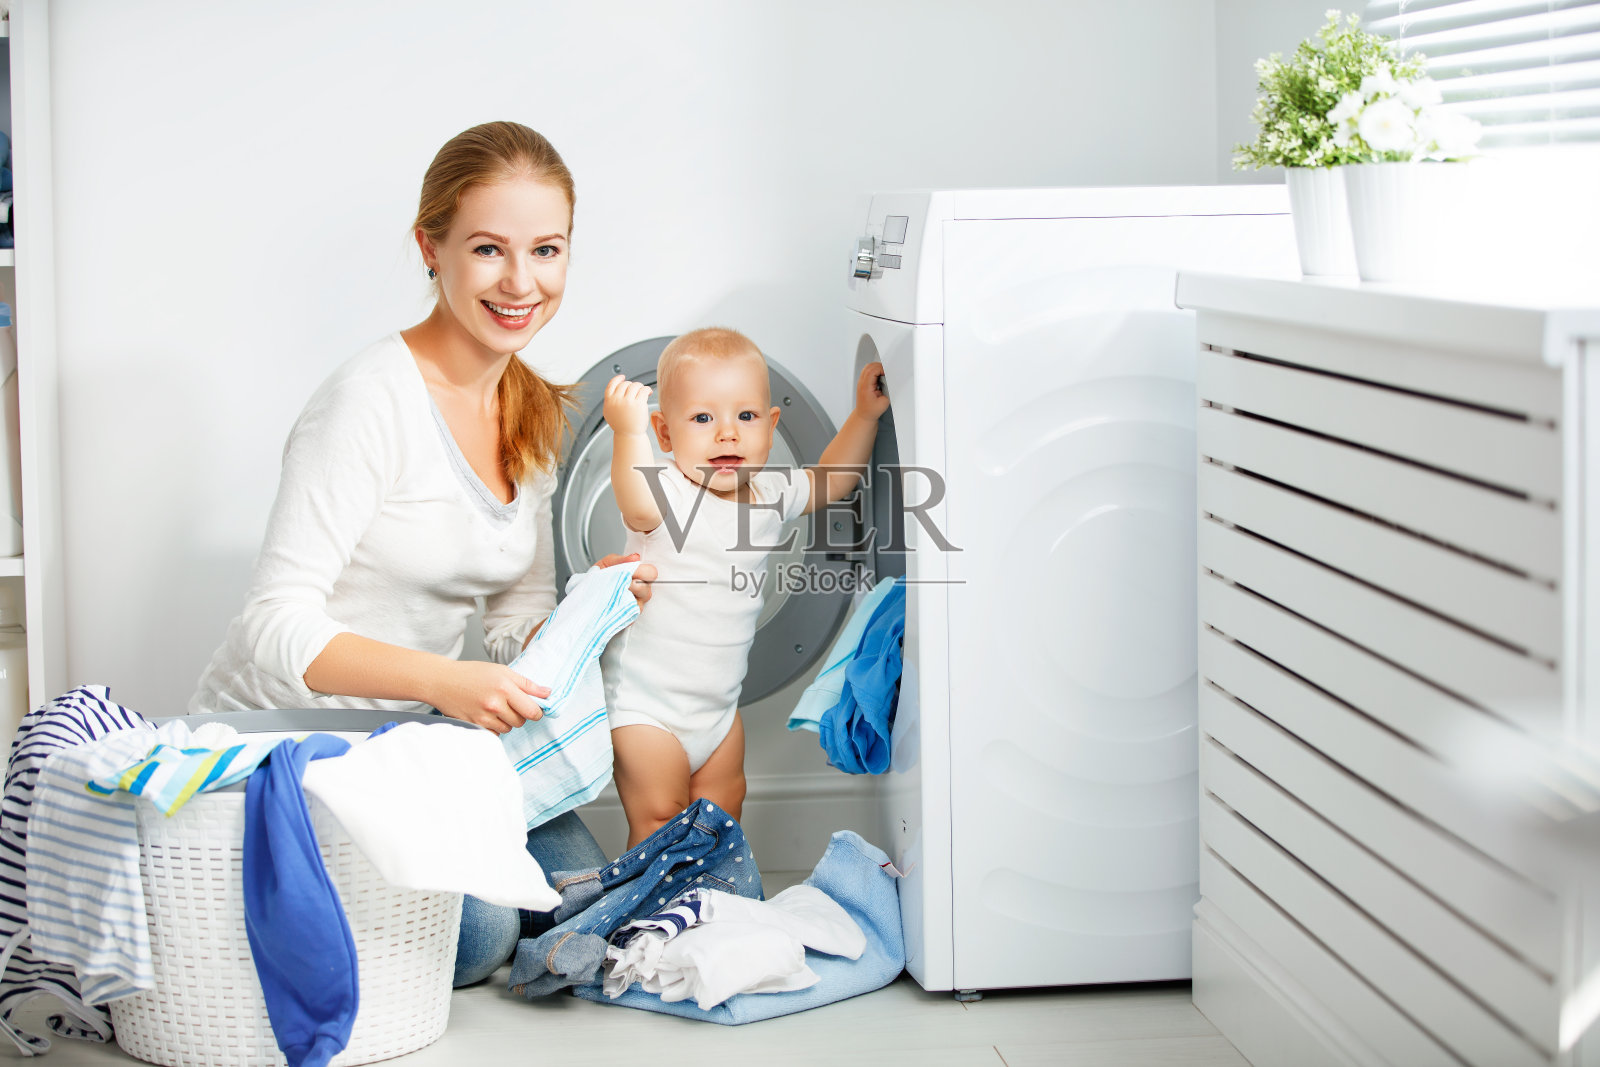 母亲家庭主妇与婴儿从事洗衣折叠衣服到洗衣机照片摄影图片